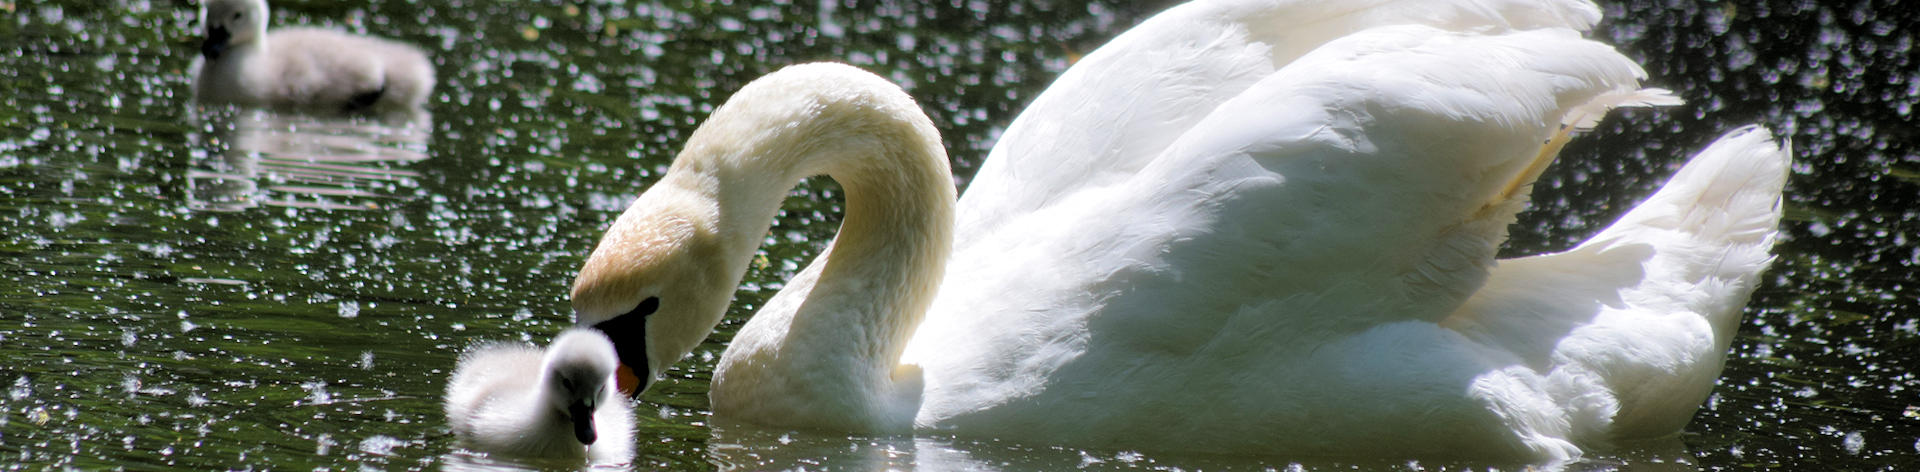 Swan-upping